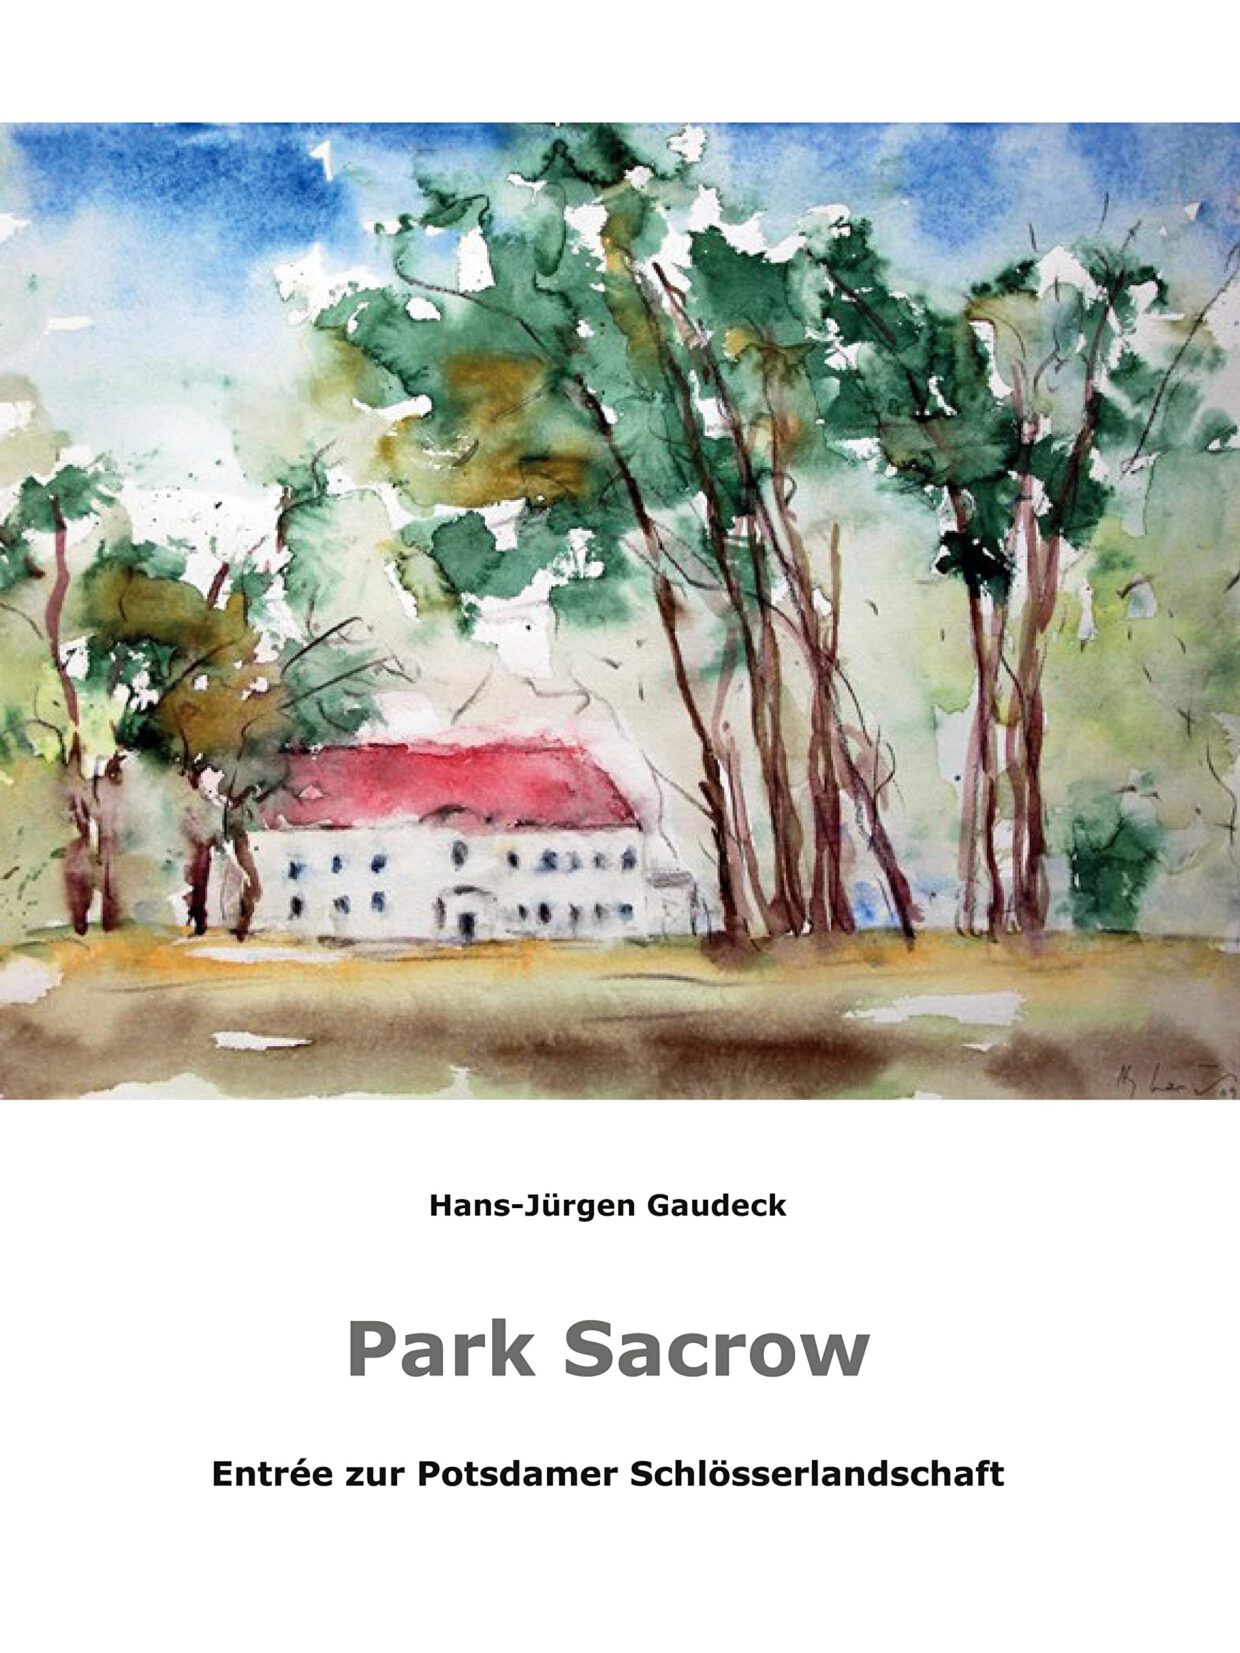 Hans-Jürgen Gaudeck: Park Sacrow